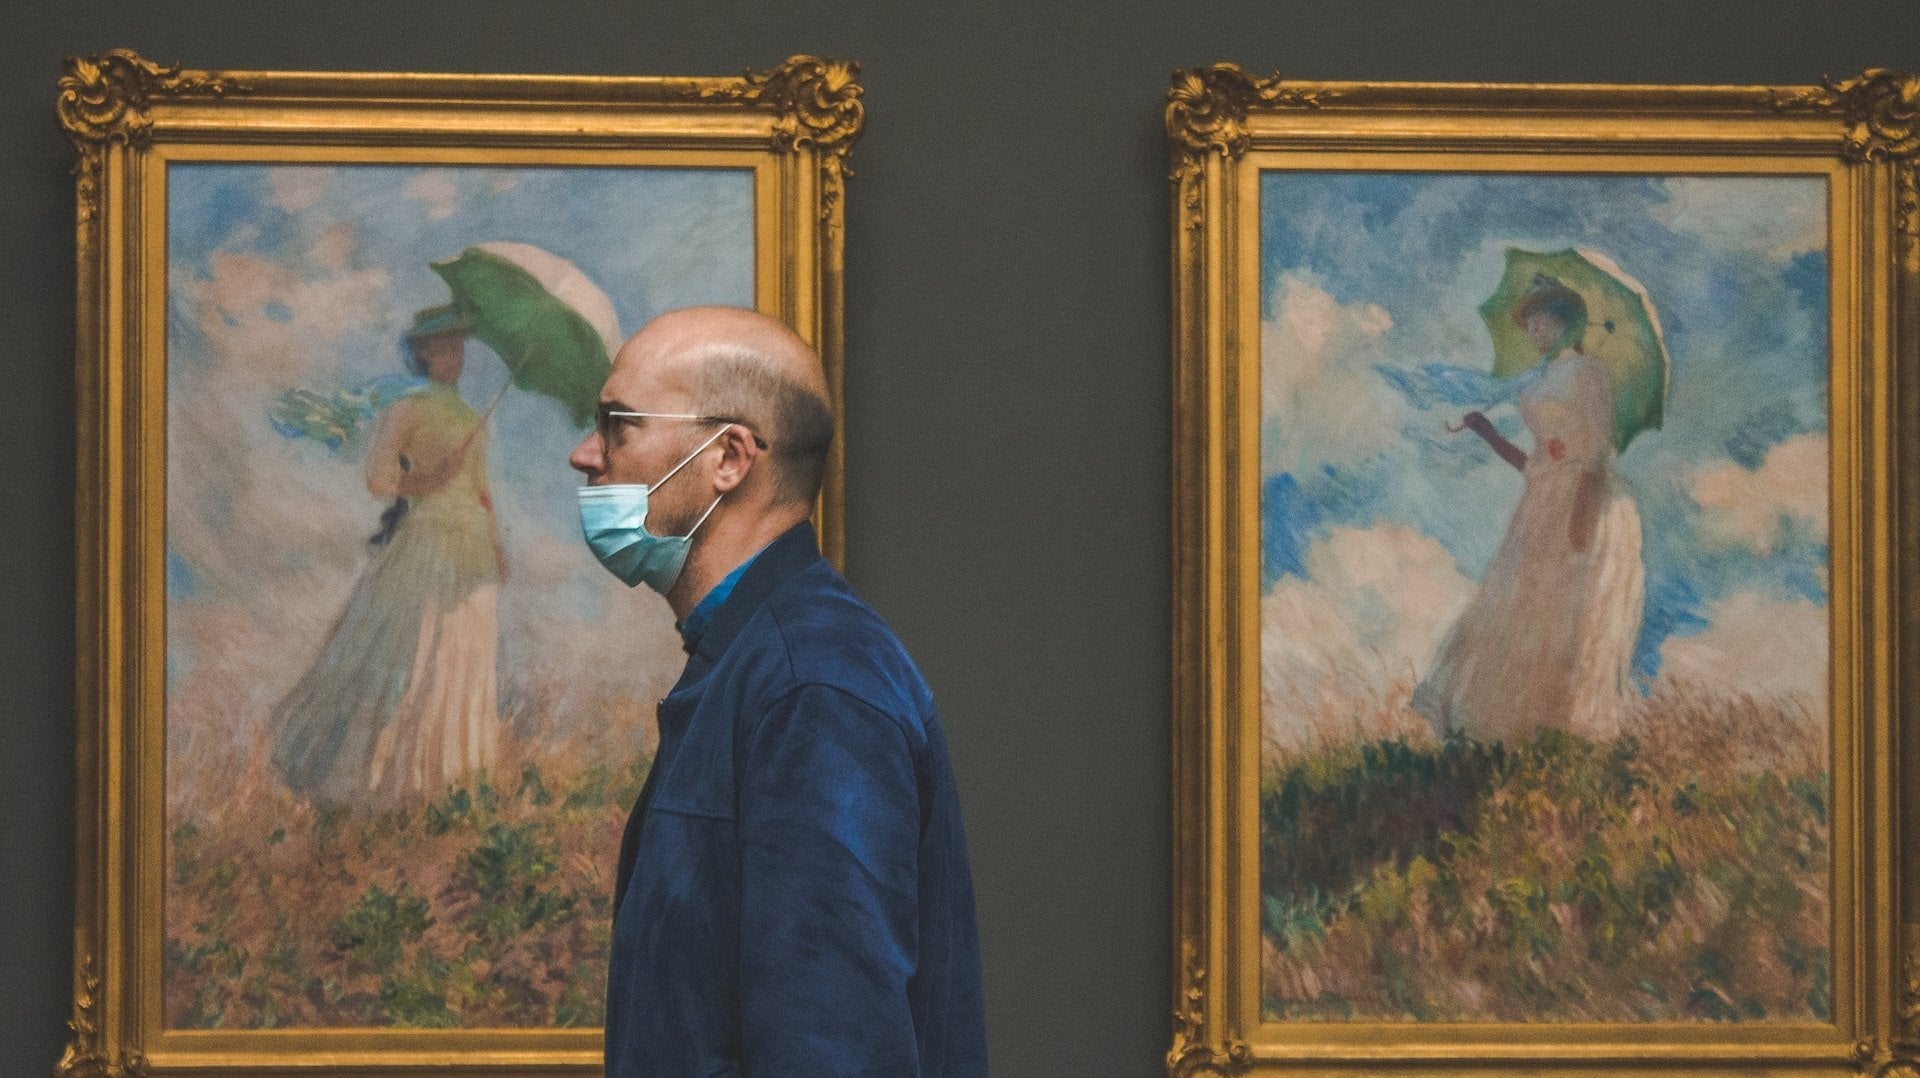 La pinturas de Claude Monet están de moda - Tienda Pasquín